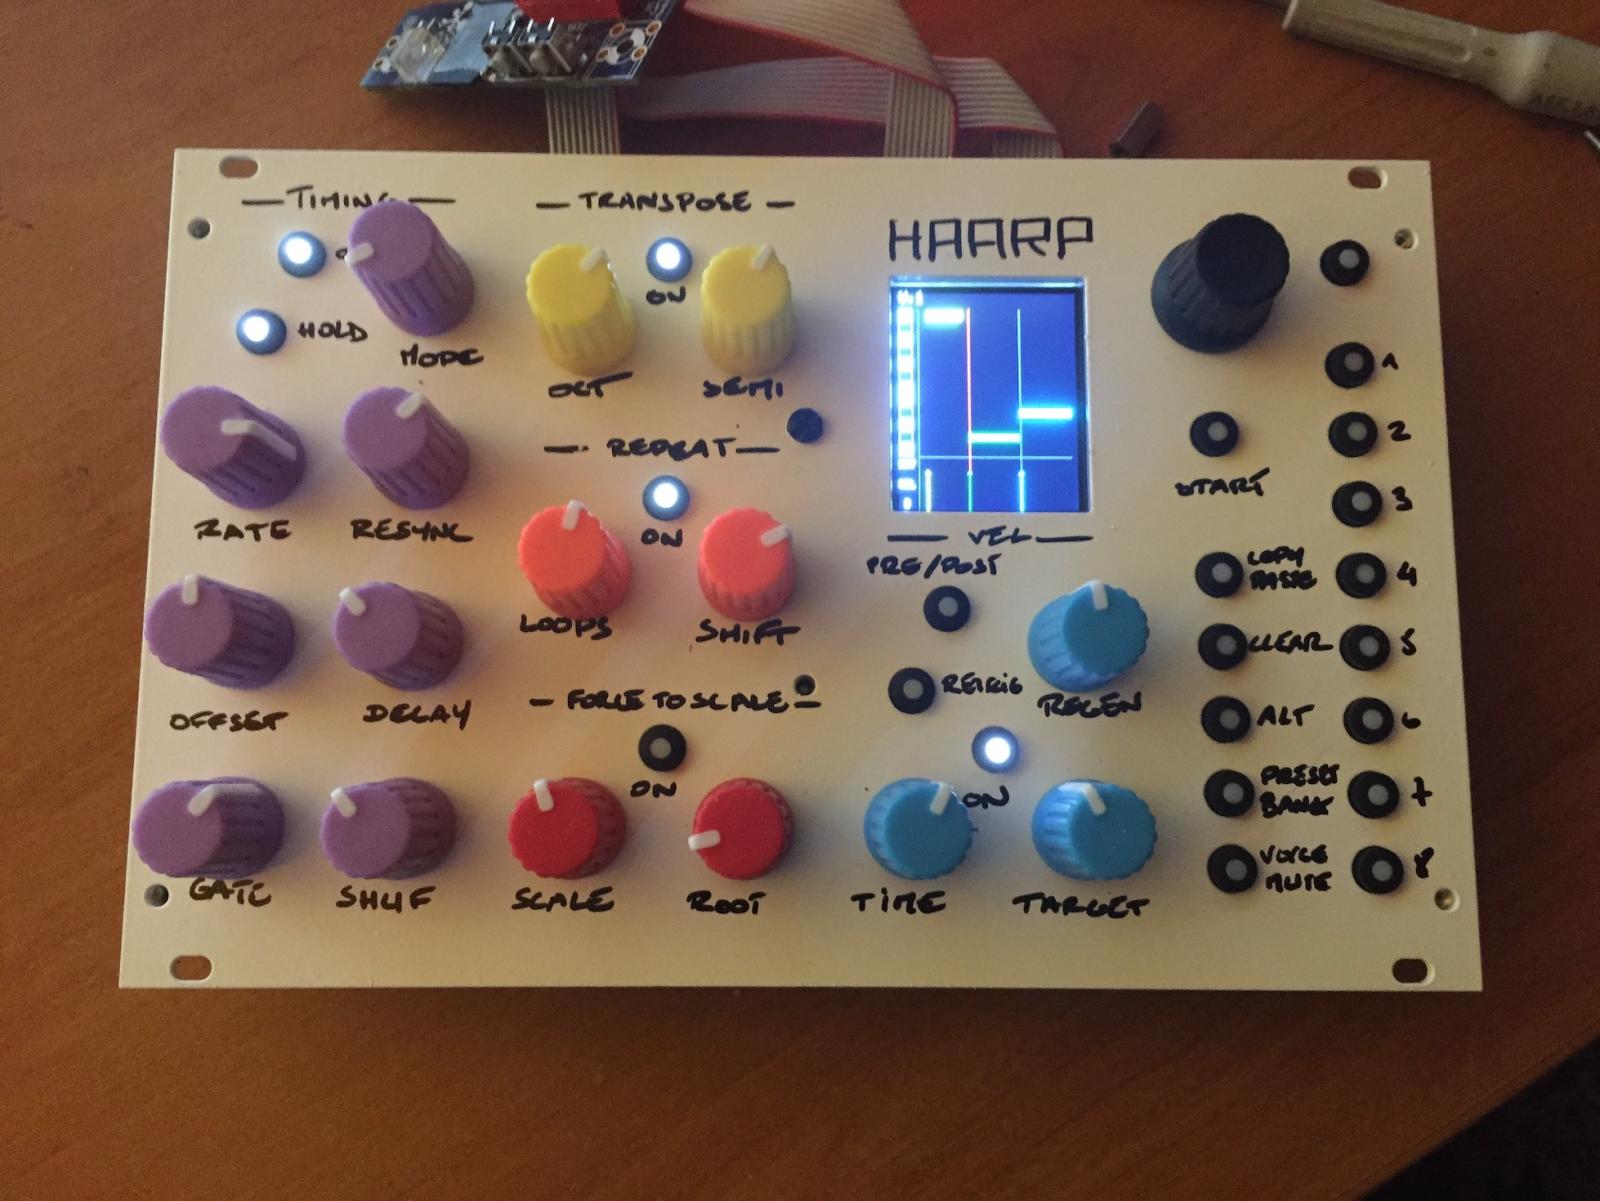 The HAARP Prototype #001